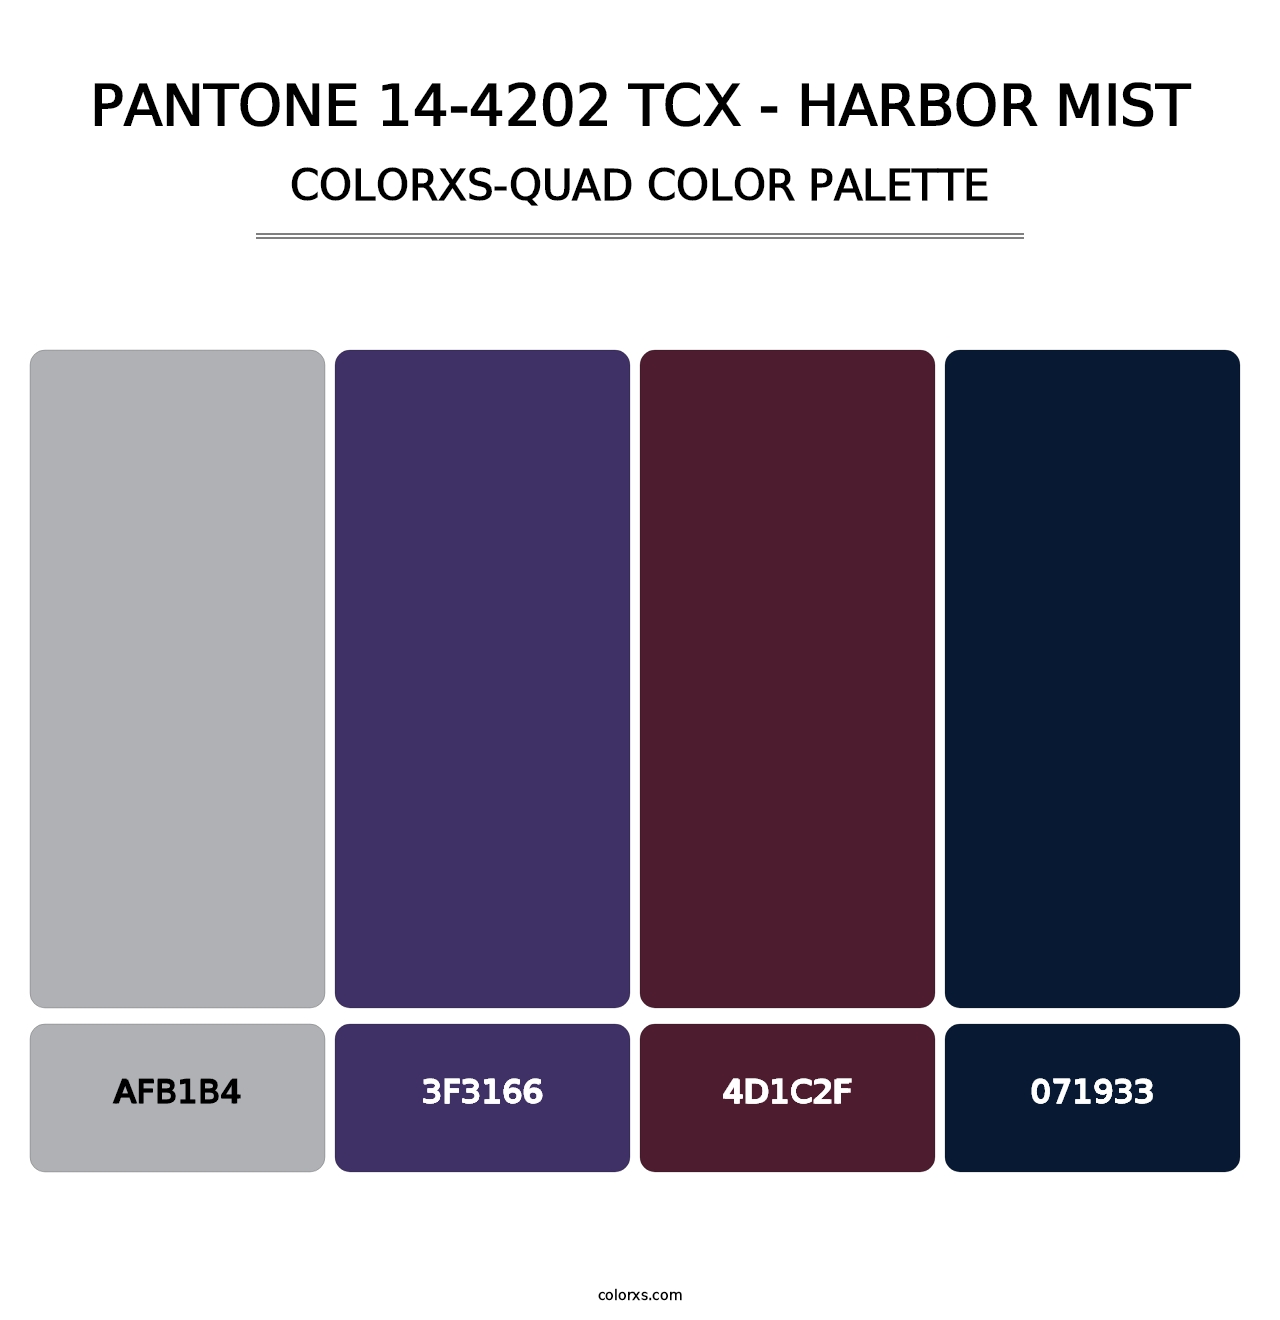 PANTONE 14-4202 TCX - Harbor Mist - Colorxs Quad Palette